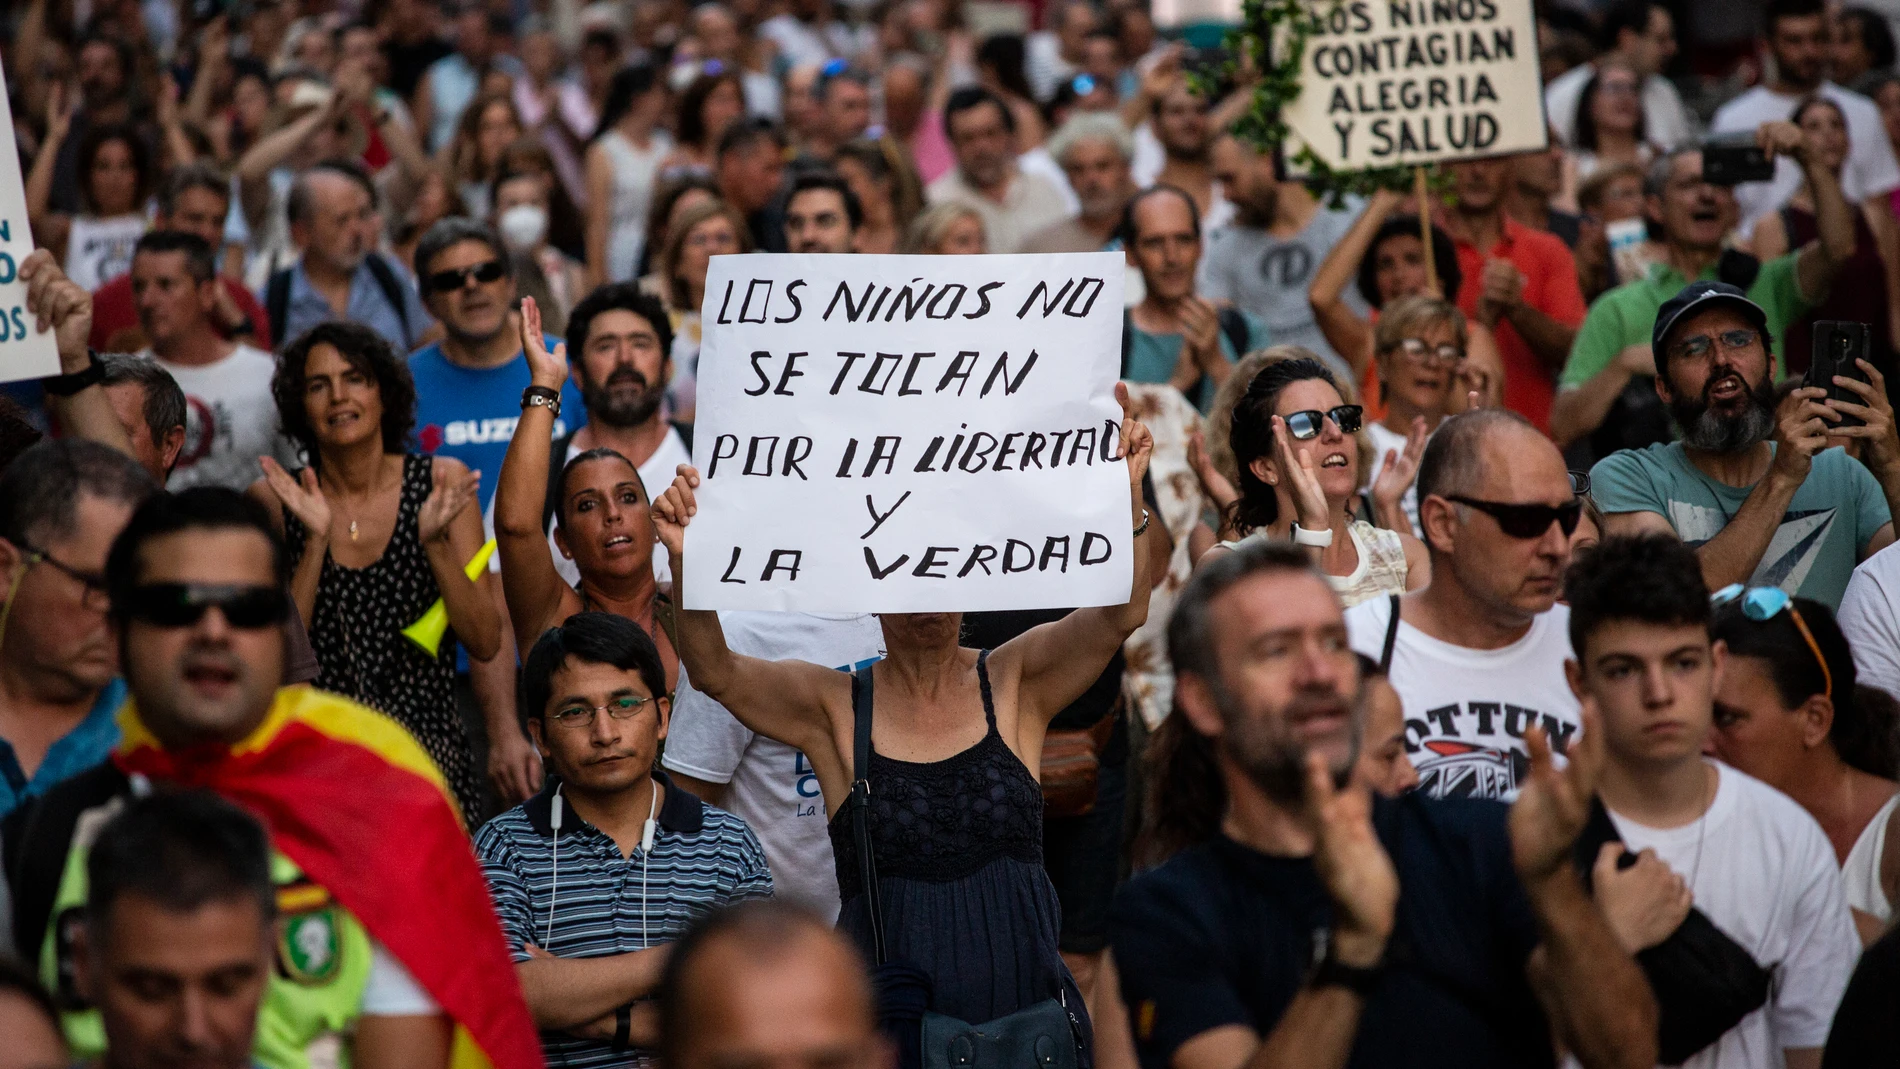 Un asistente lleva un cartel que dice "Los niños no se tocan, por la libertad y la verdad", durante una manifestación contra la vacunación contra la covid en niños el pasado día 14 en Madrid 14/08/2021